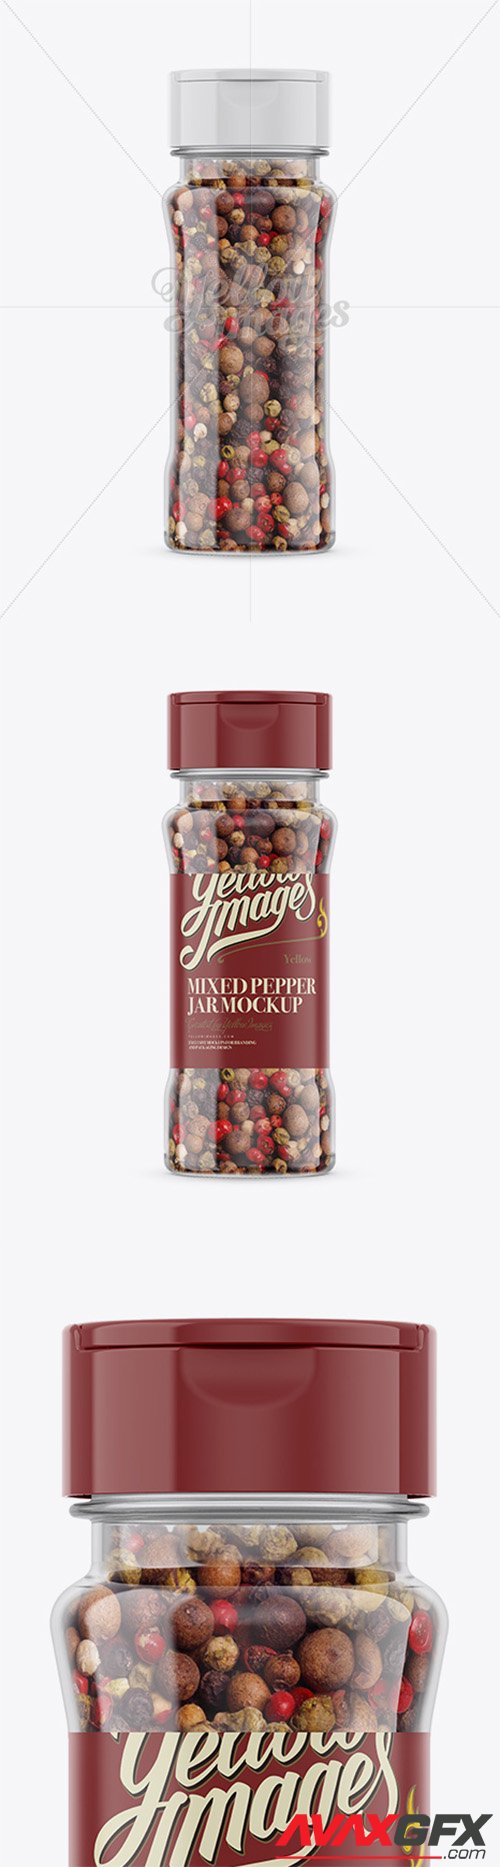 Mixed Pepper Jar Mockup 78509 TIF